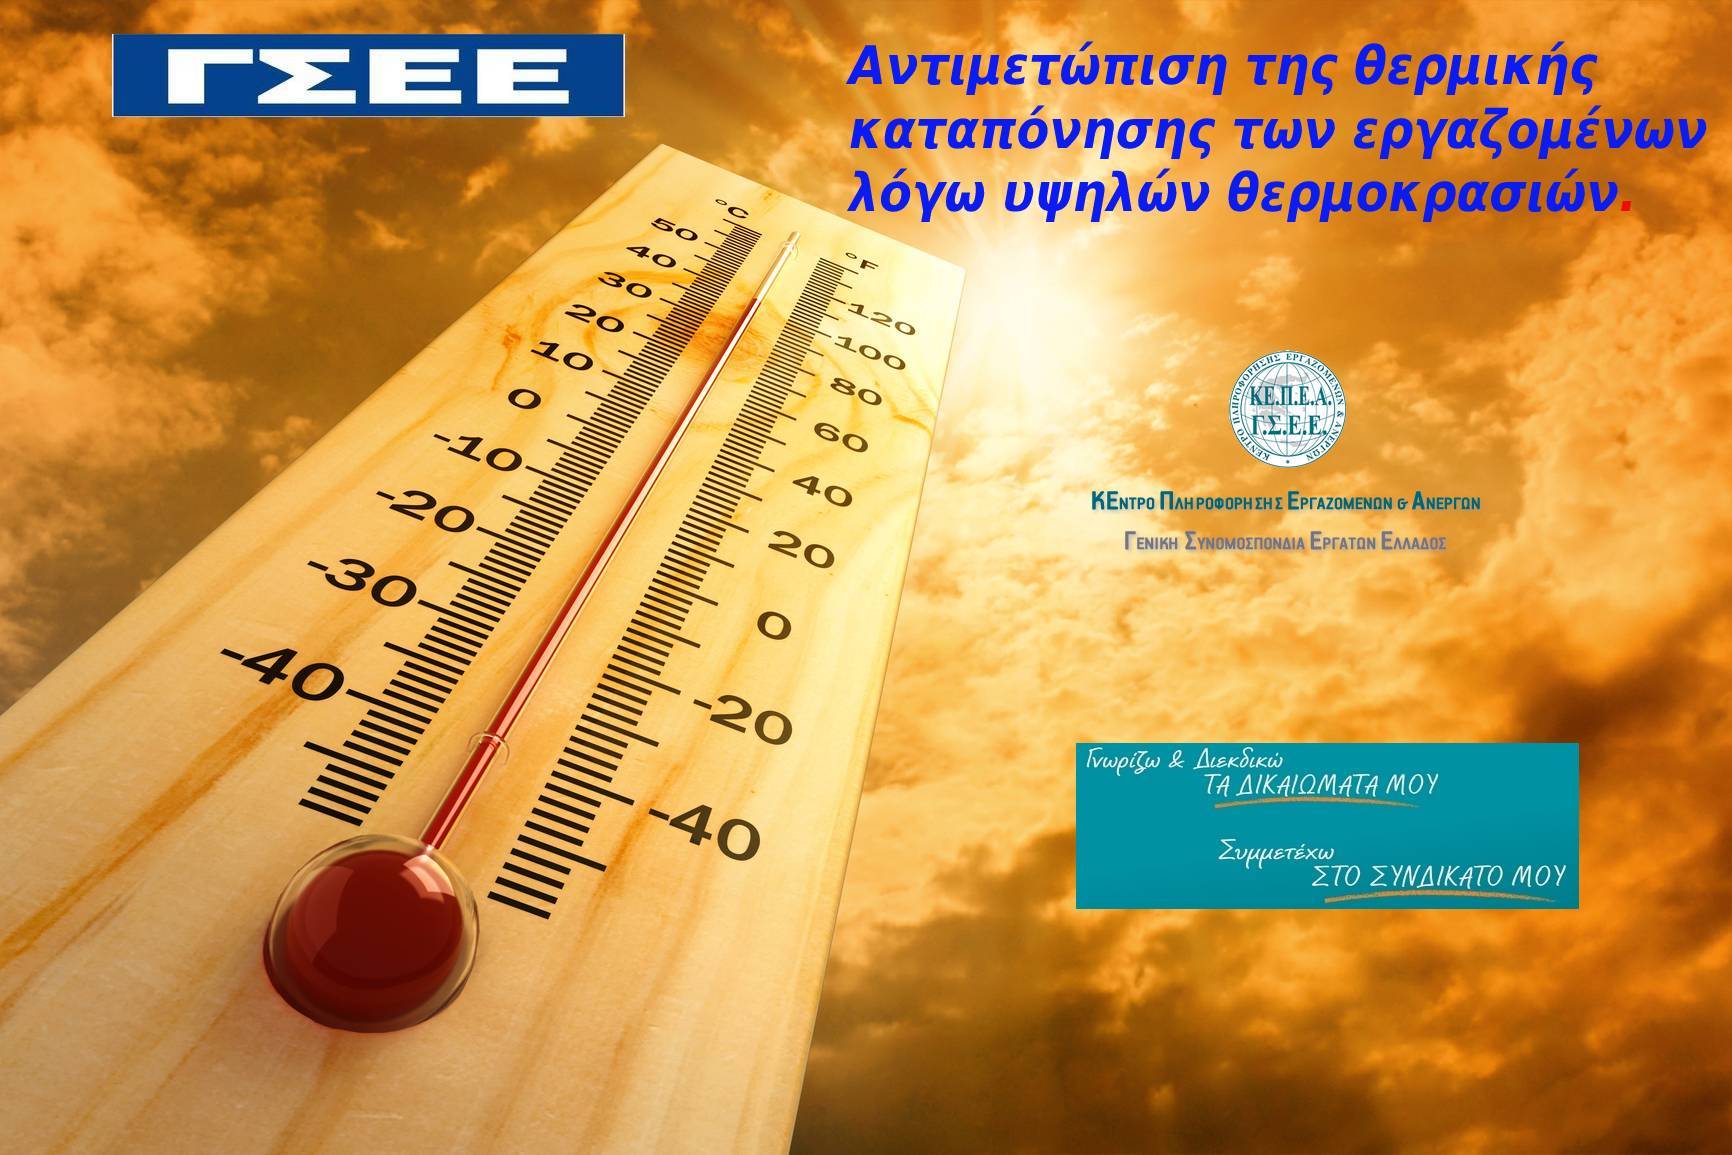 Αντιμετώπιση της θερμικής καταπόνησης των εργαζομένων λόγω υψηλών θερμοκρασιών.